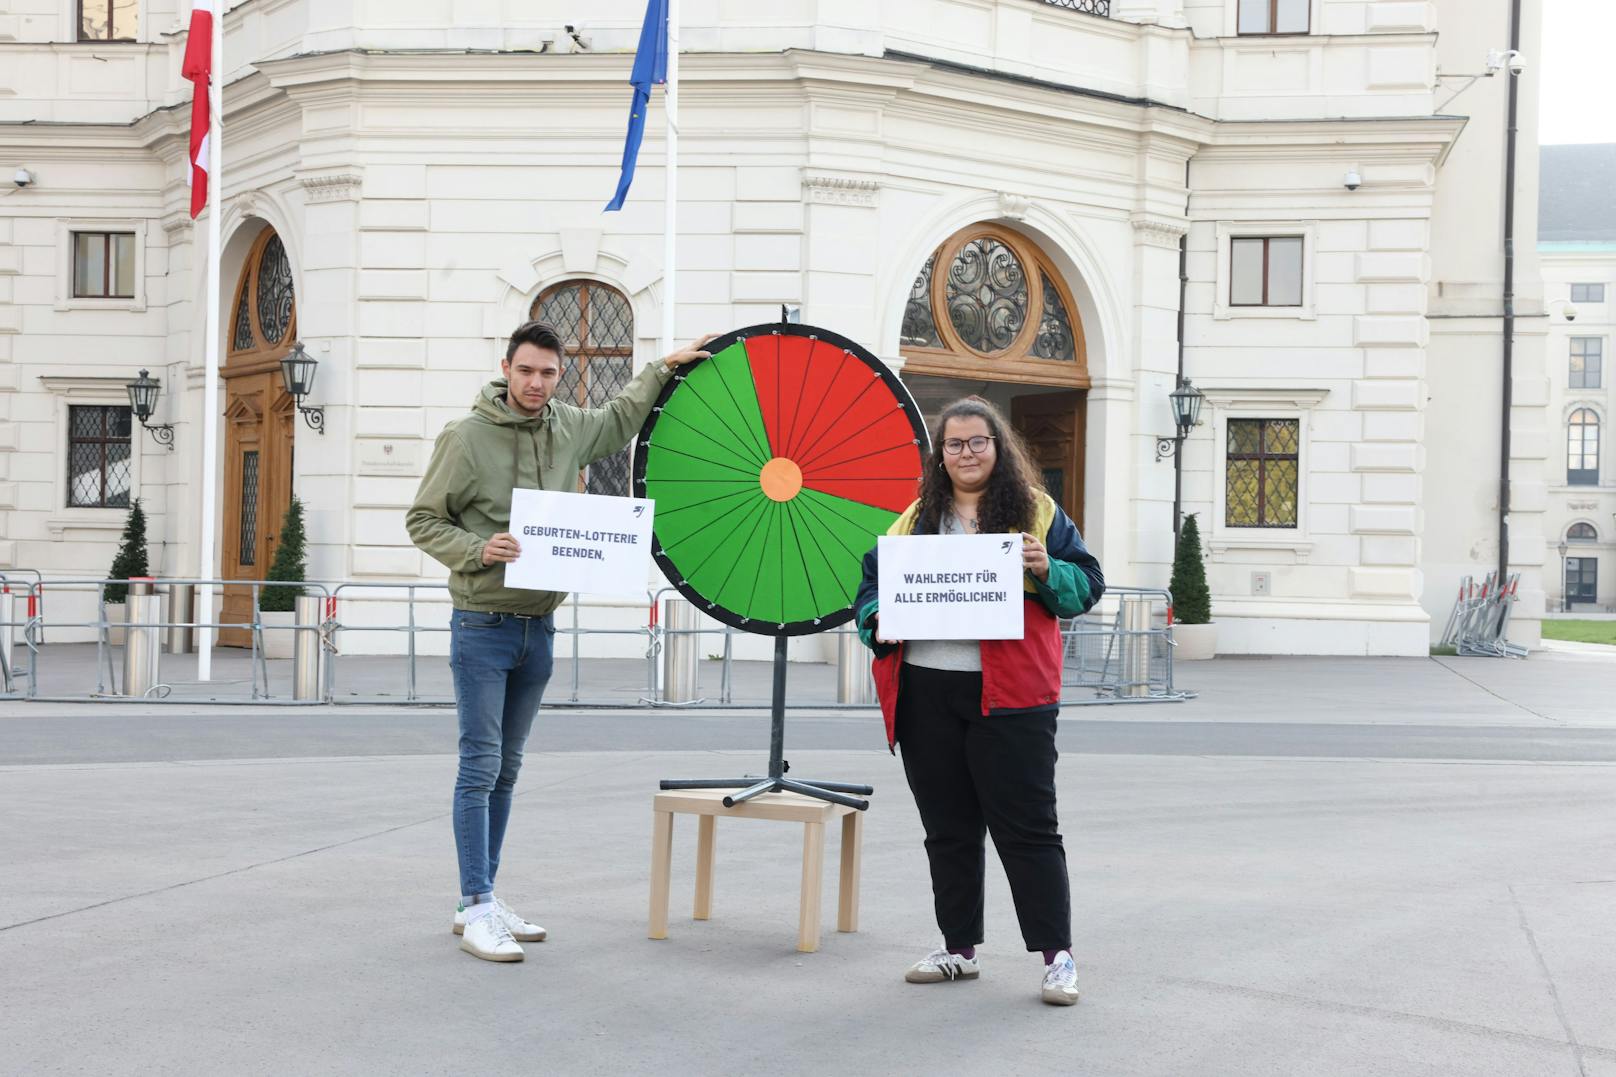 Junge Rote wollen Wahlrecht für 1,4 Millionen Ausländer